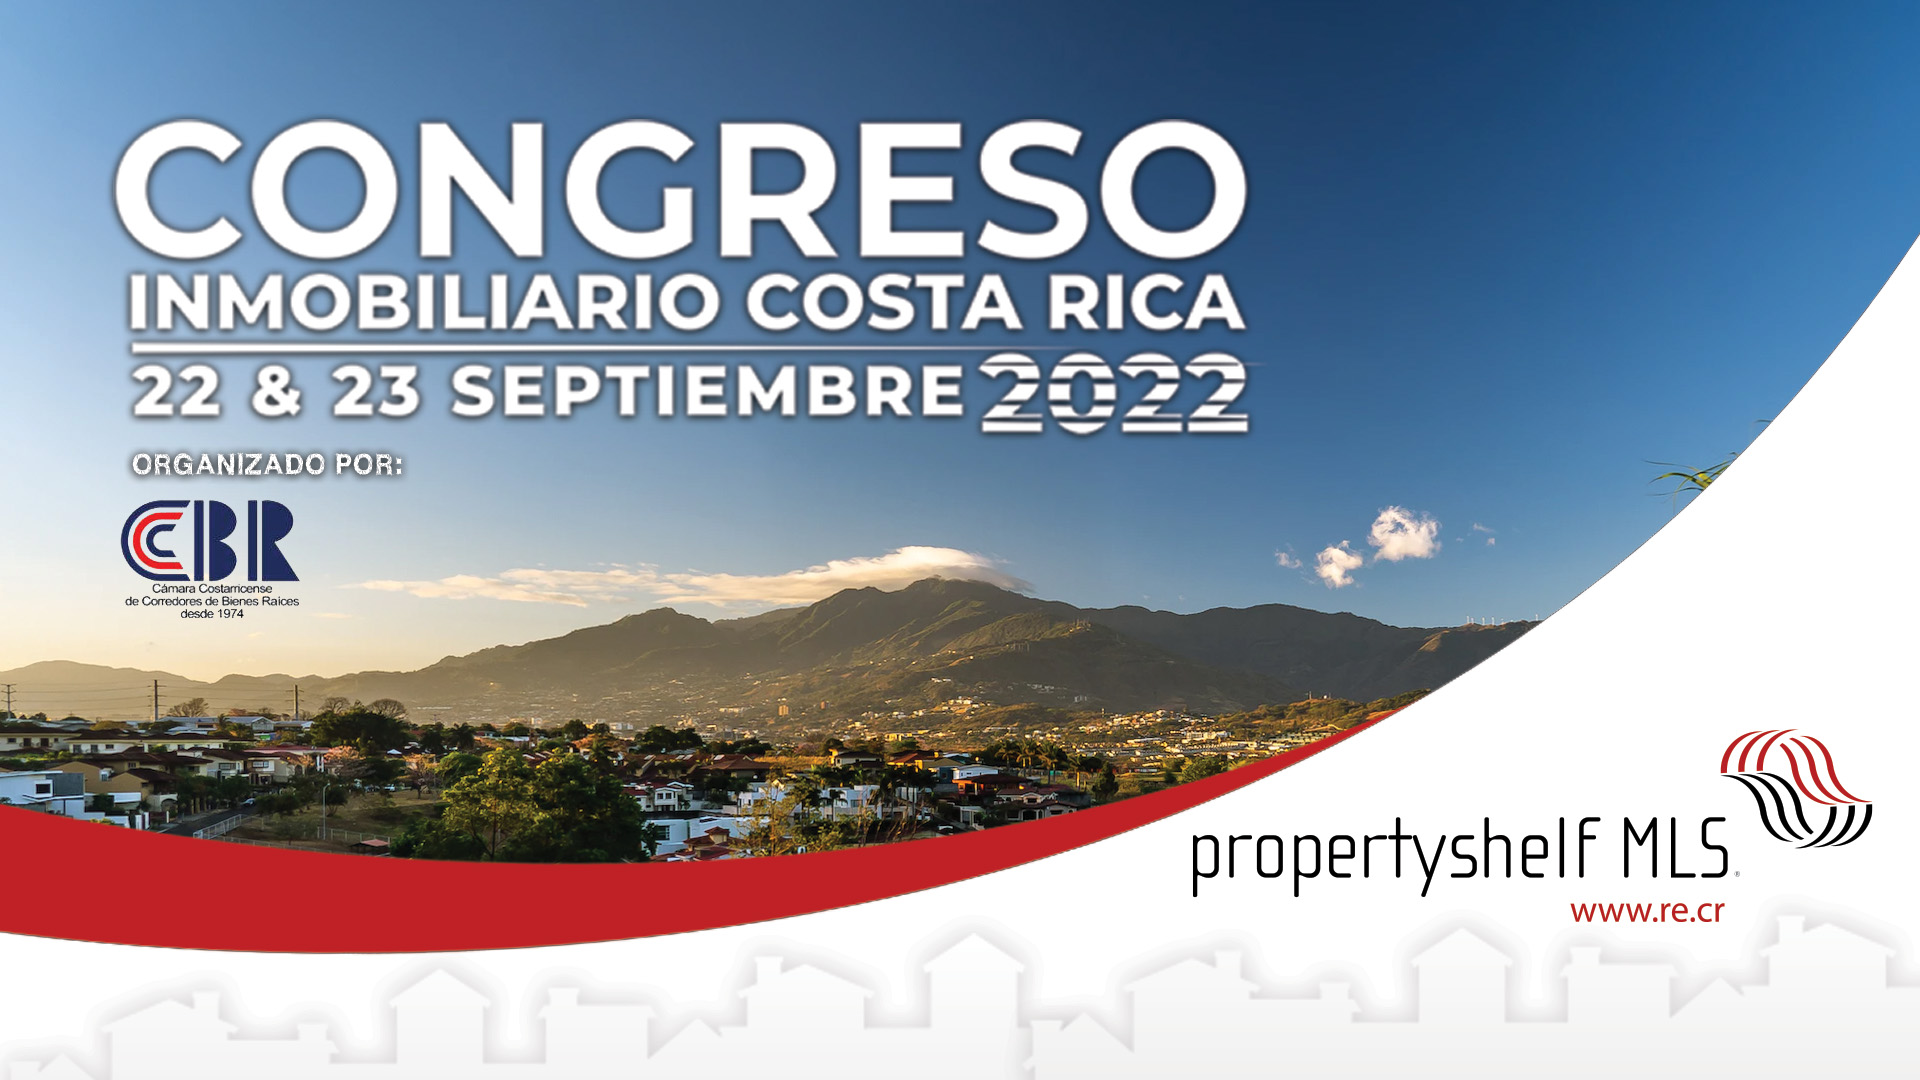 Congreso Inmobiliaria 2022 CCCBR Costa Rica